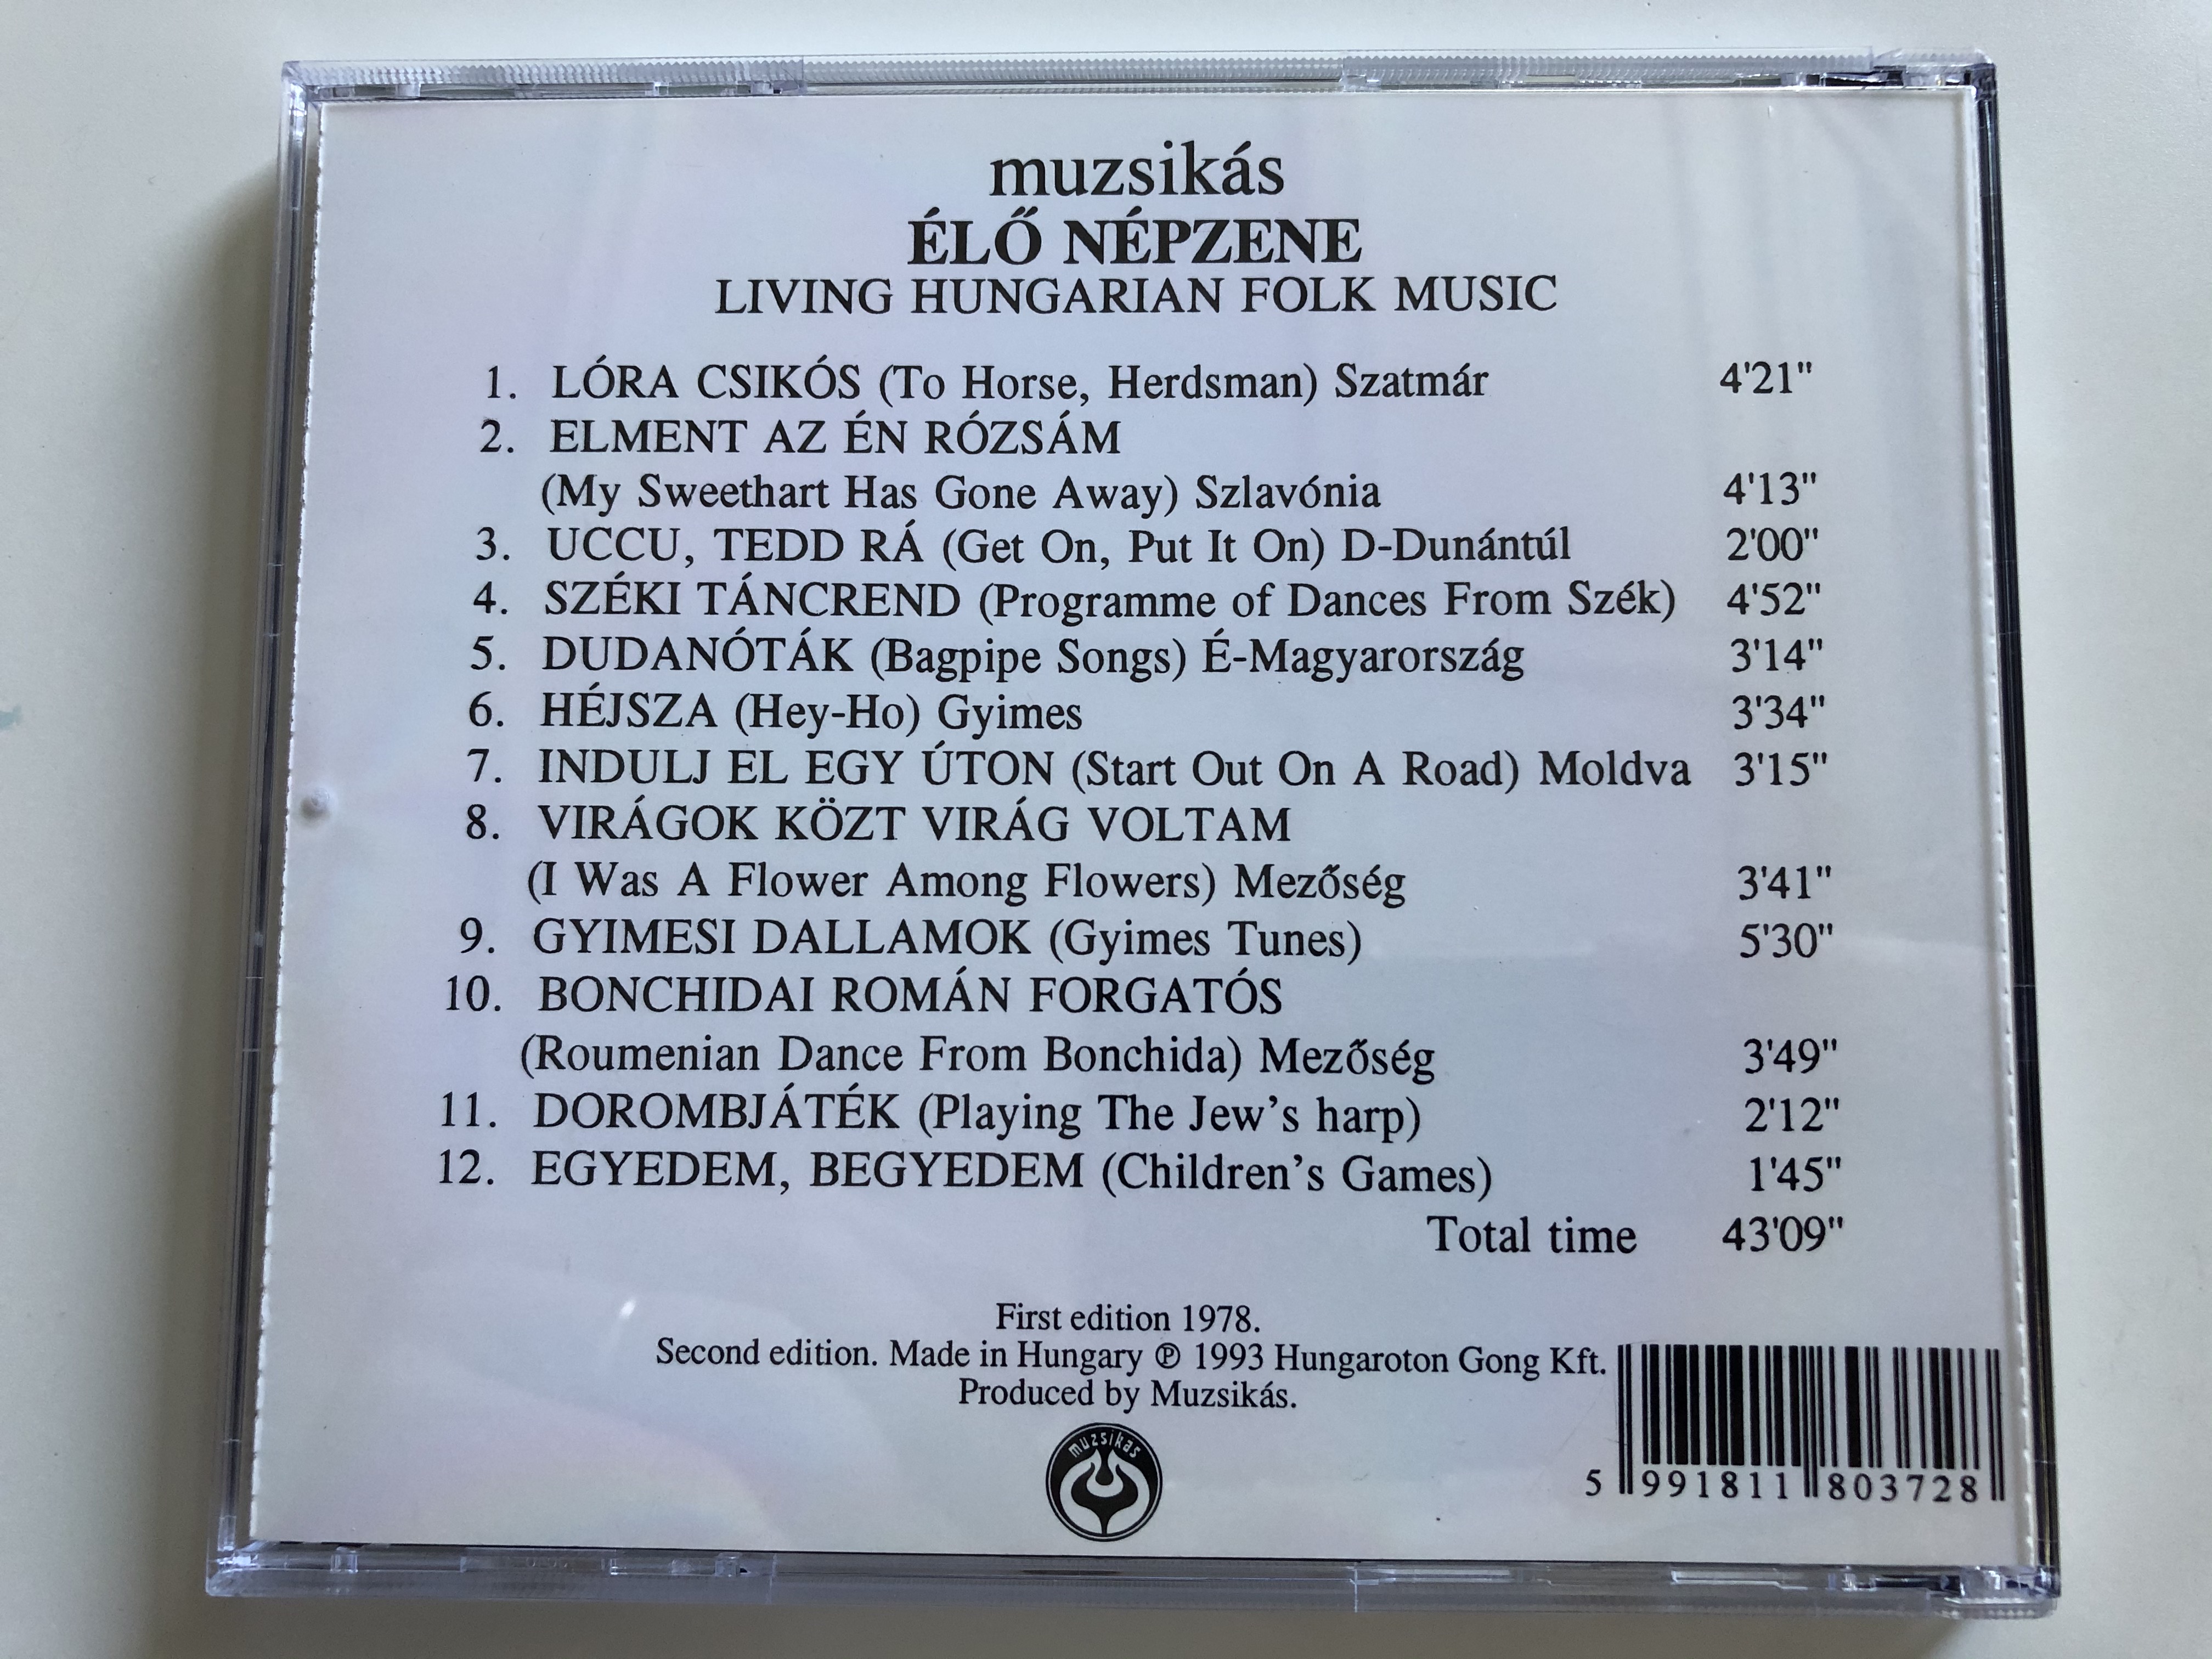 living-hungarian-folk-music-muzsik-s-egy-ttes-l-n-pzene-gong-audio-cd-1993-hcd-18037-5-.jpg